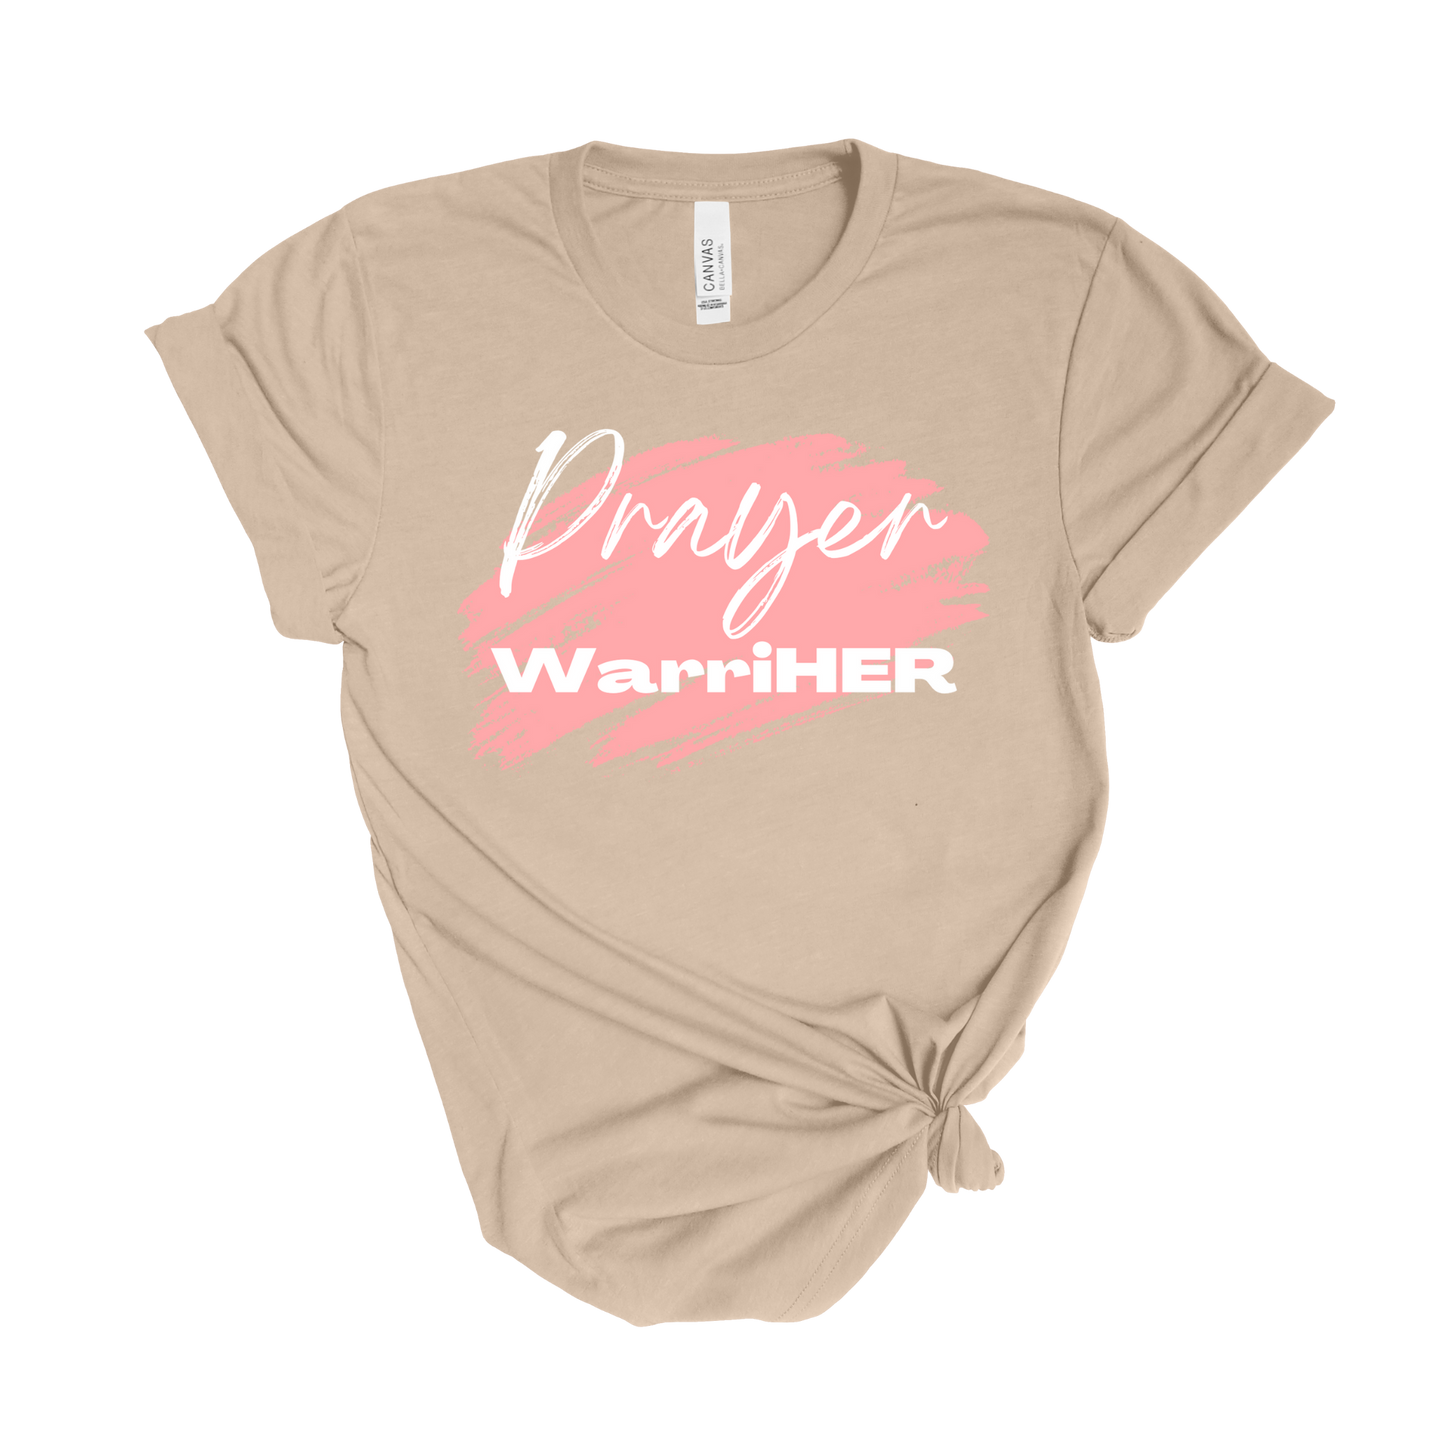 Prayer WarriHER T-Shirt